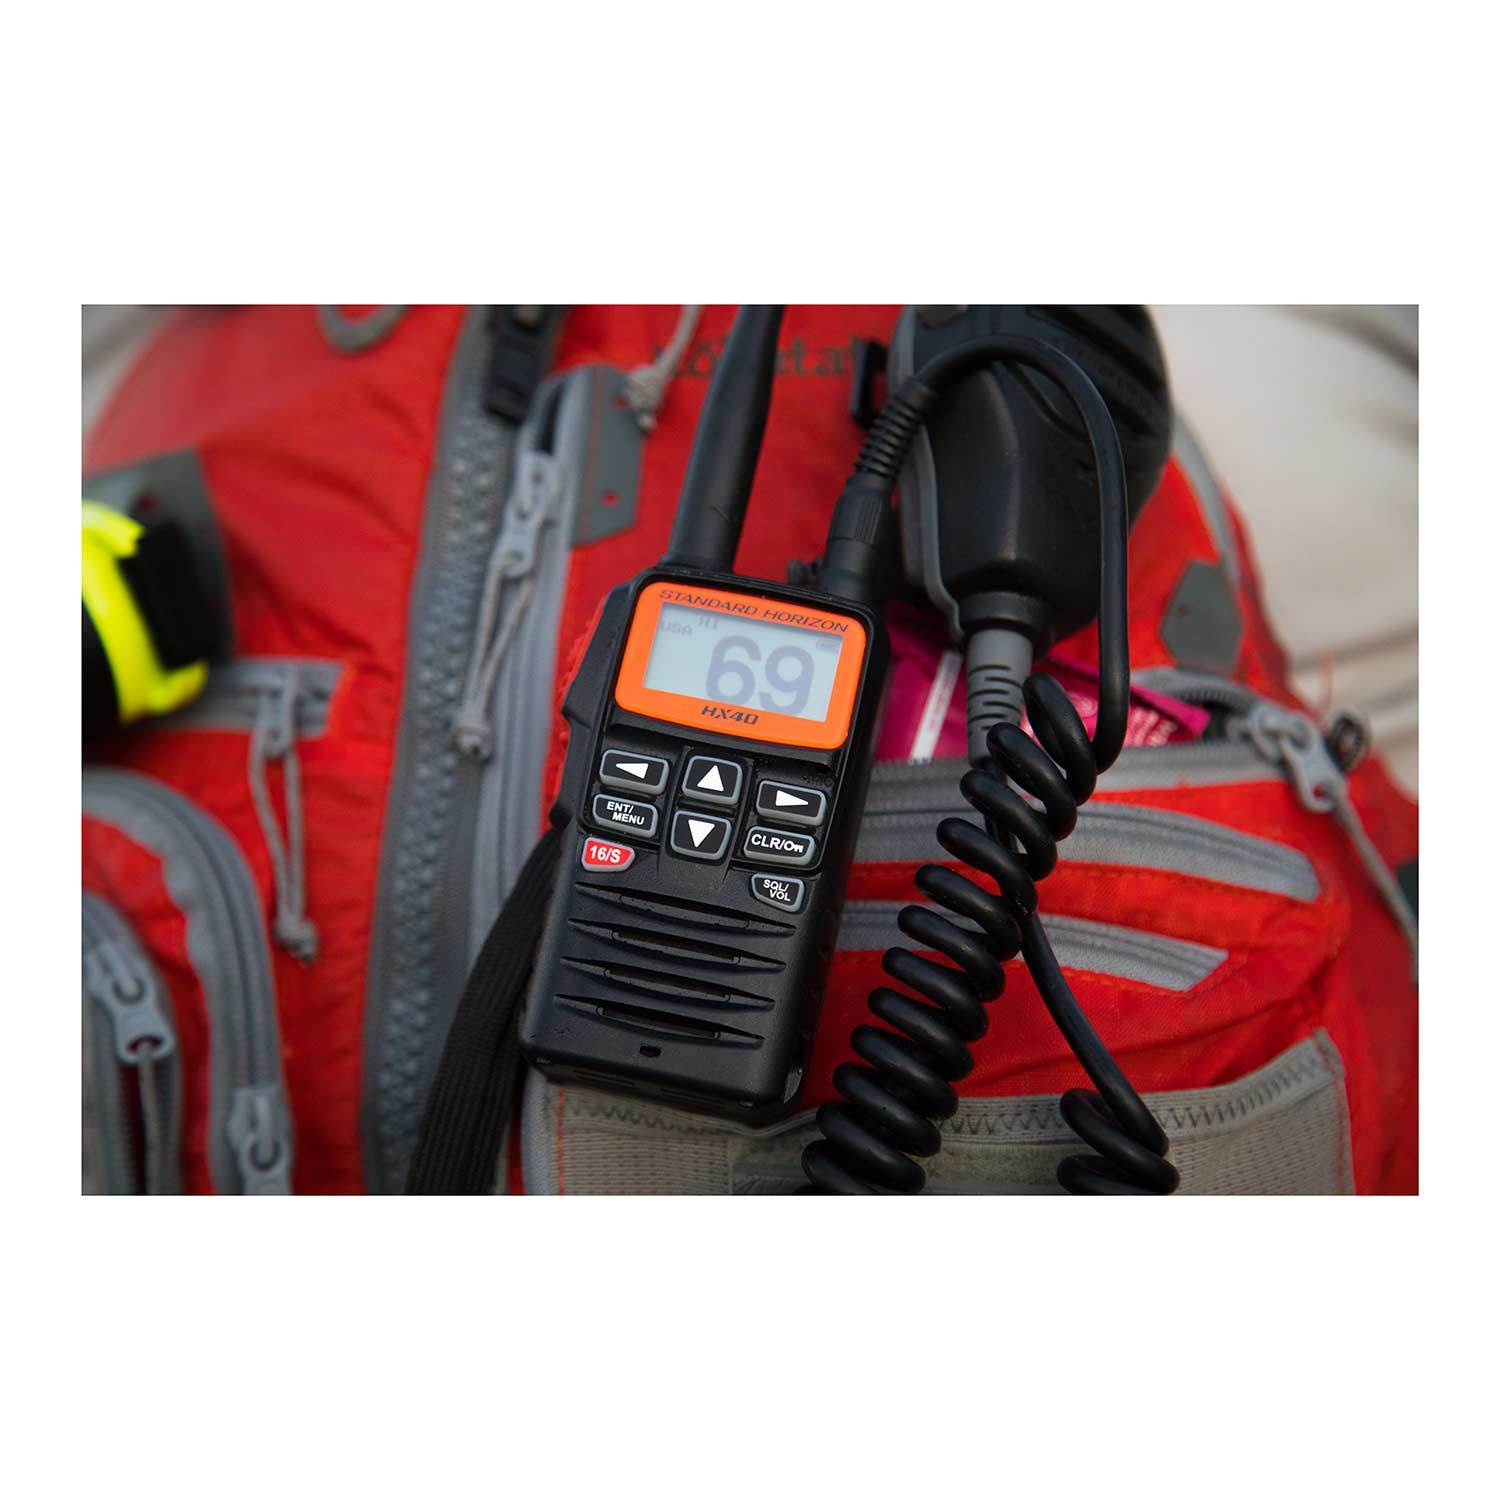 HX40 Ultra Compact 6W Handheld VHF Radio West Marine